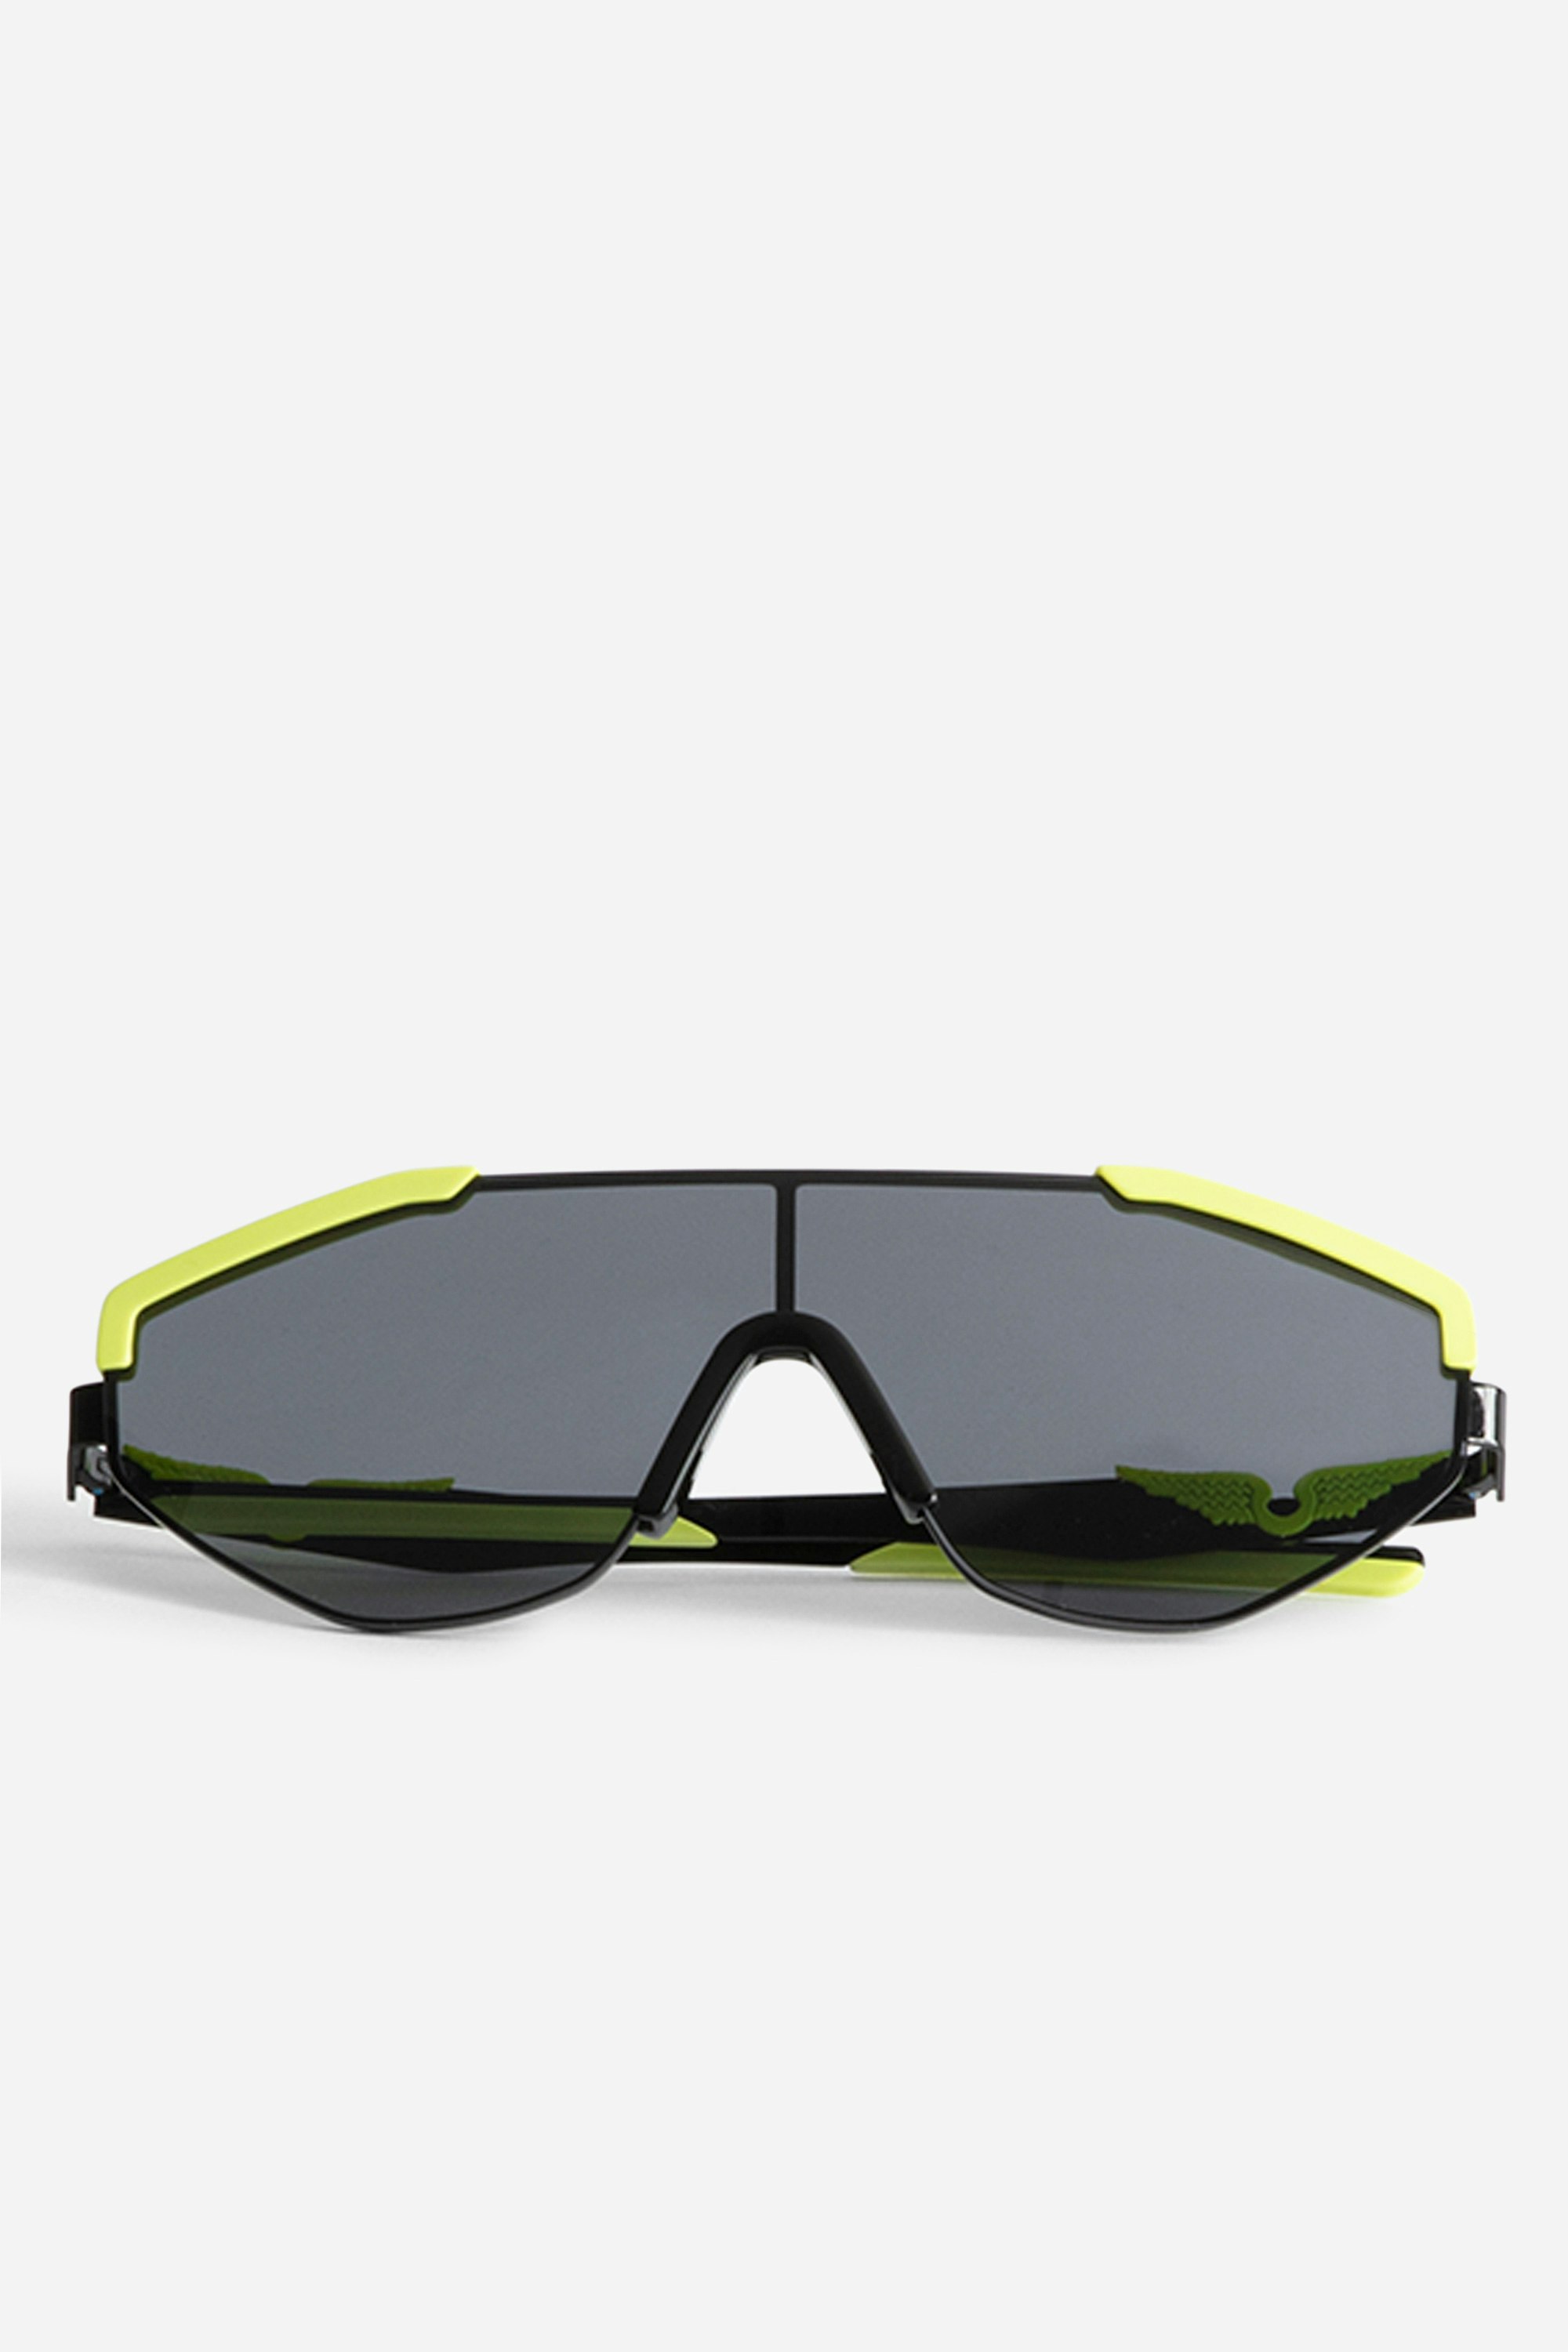 Sonnenbrille ZV23H9 Modeschau - Futuristische Sonnenbrille der Modenschau HW23 mit den ikonischen Flügeln an den Bügeln.